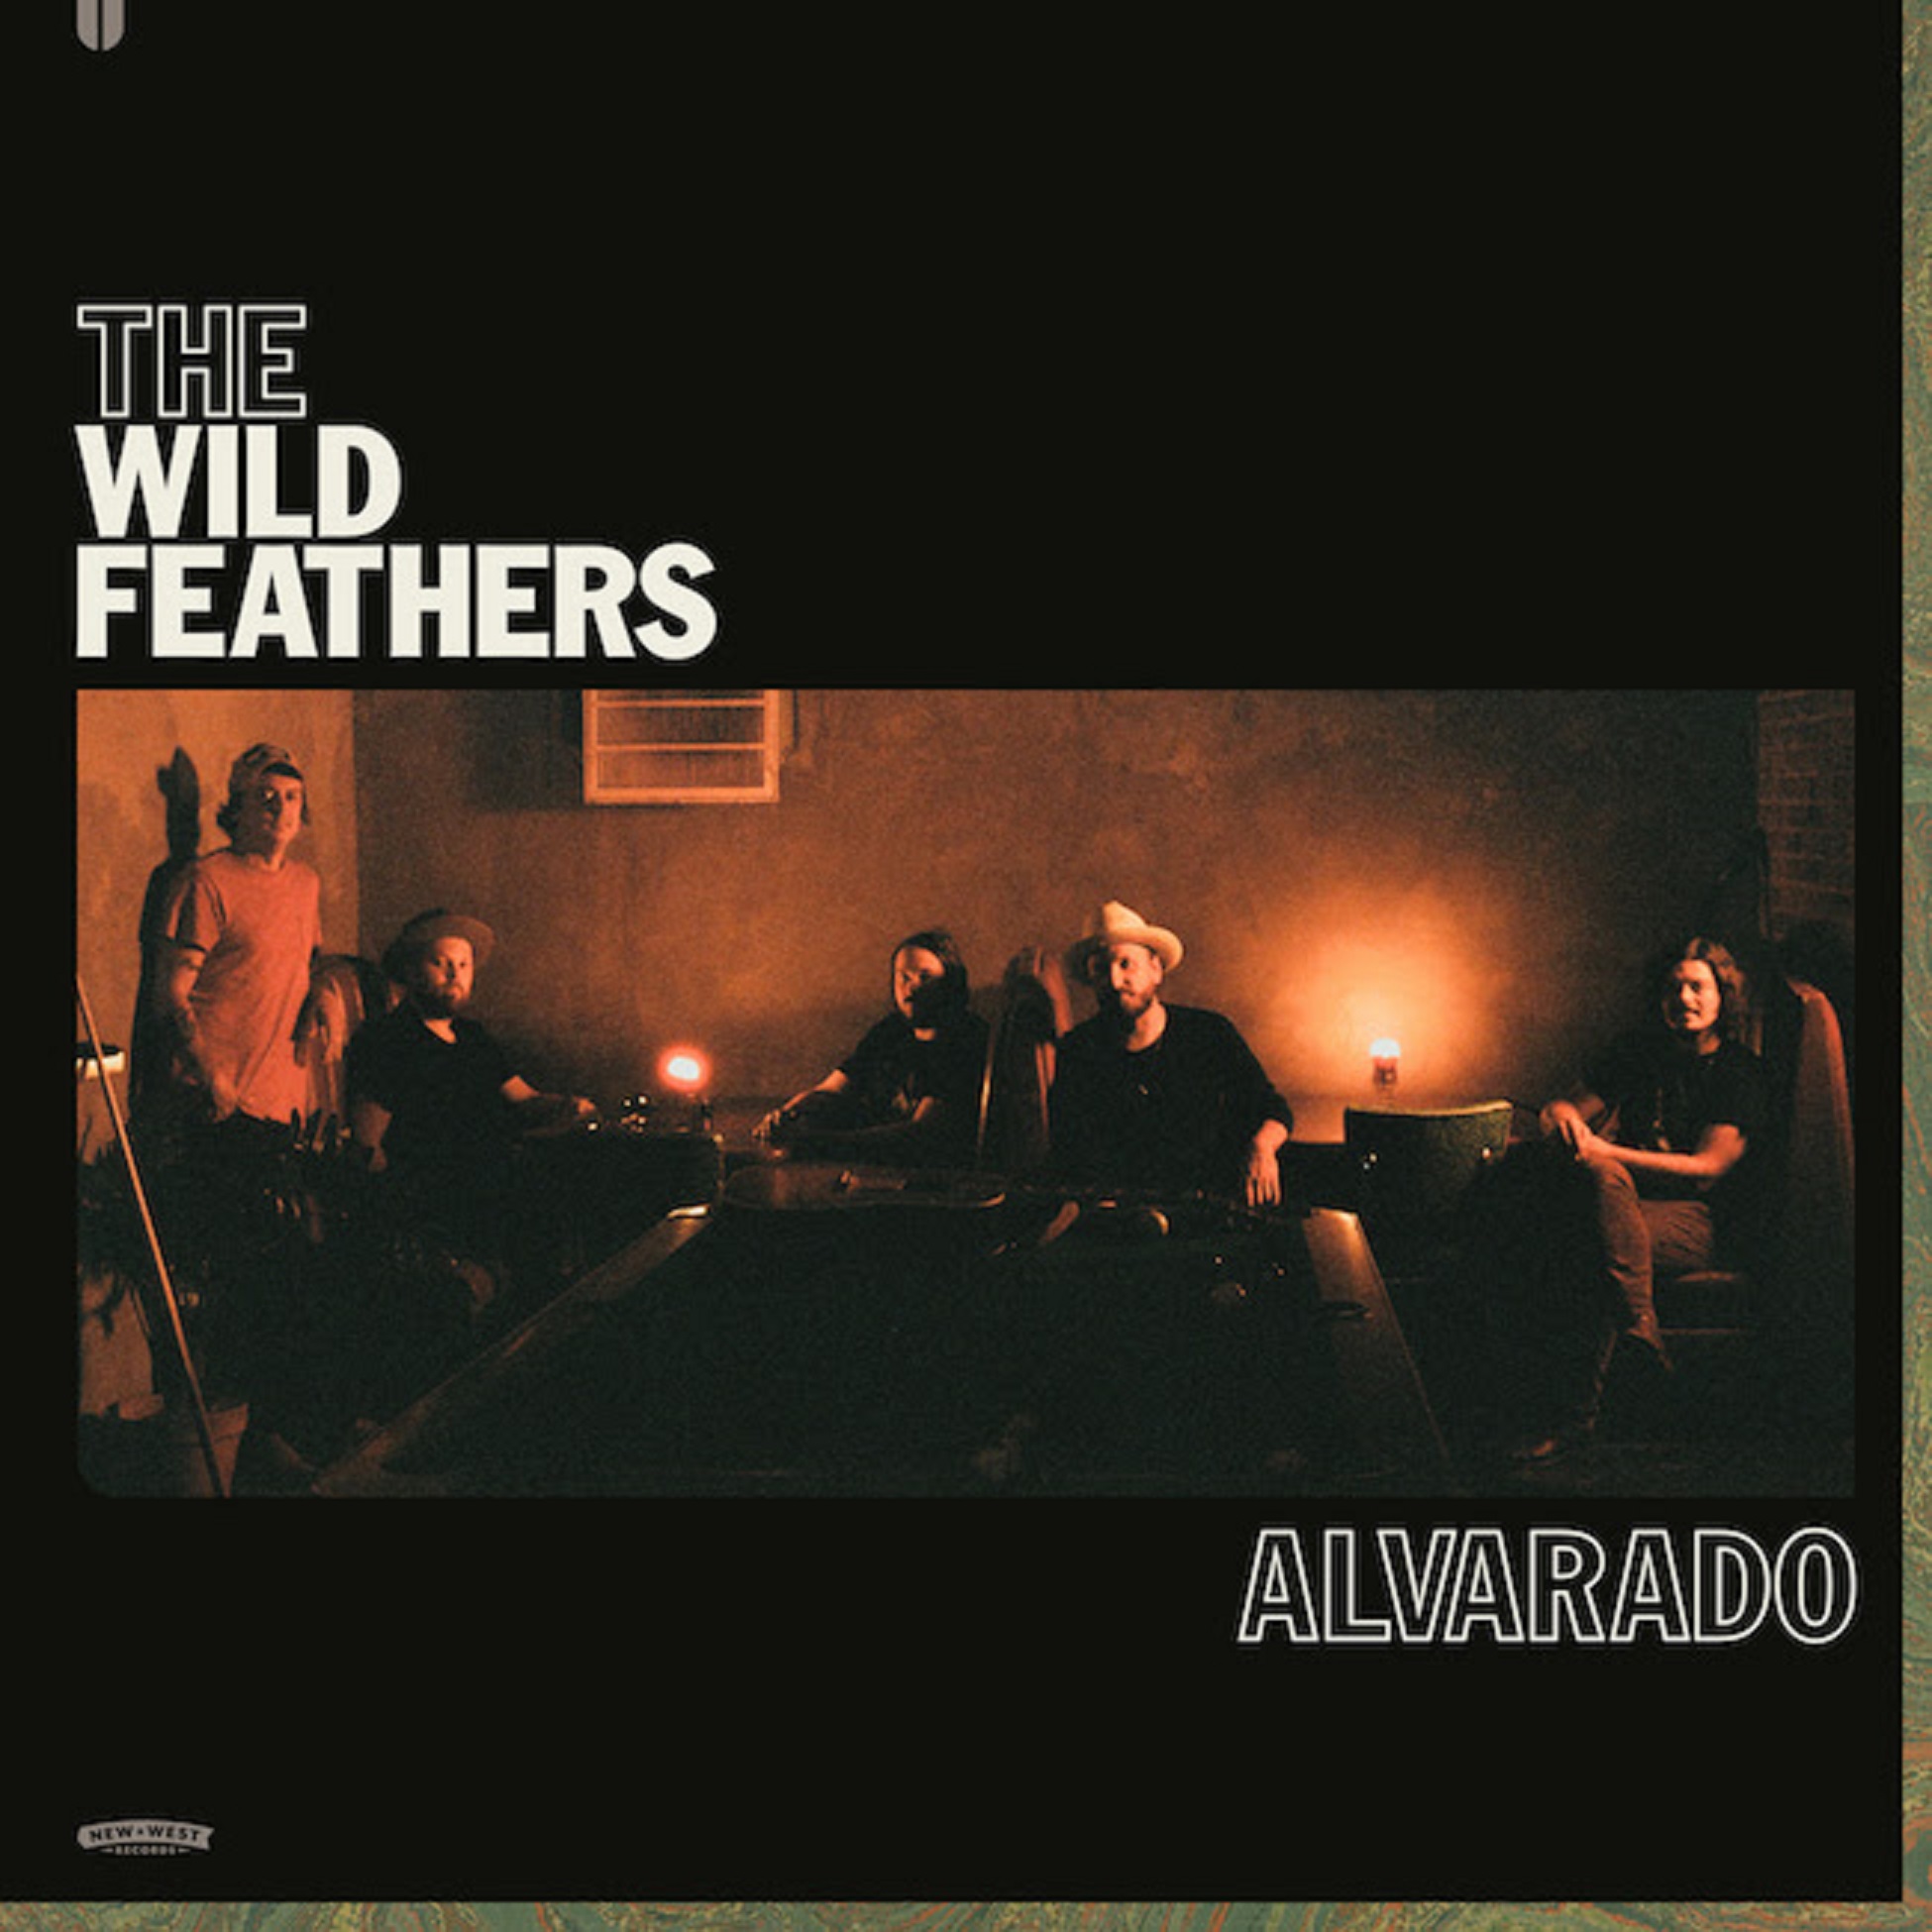 The Wild Feathers Release "Alvarado"